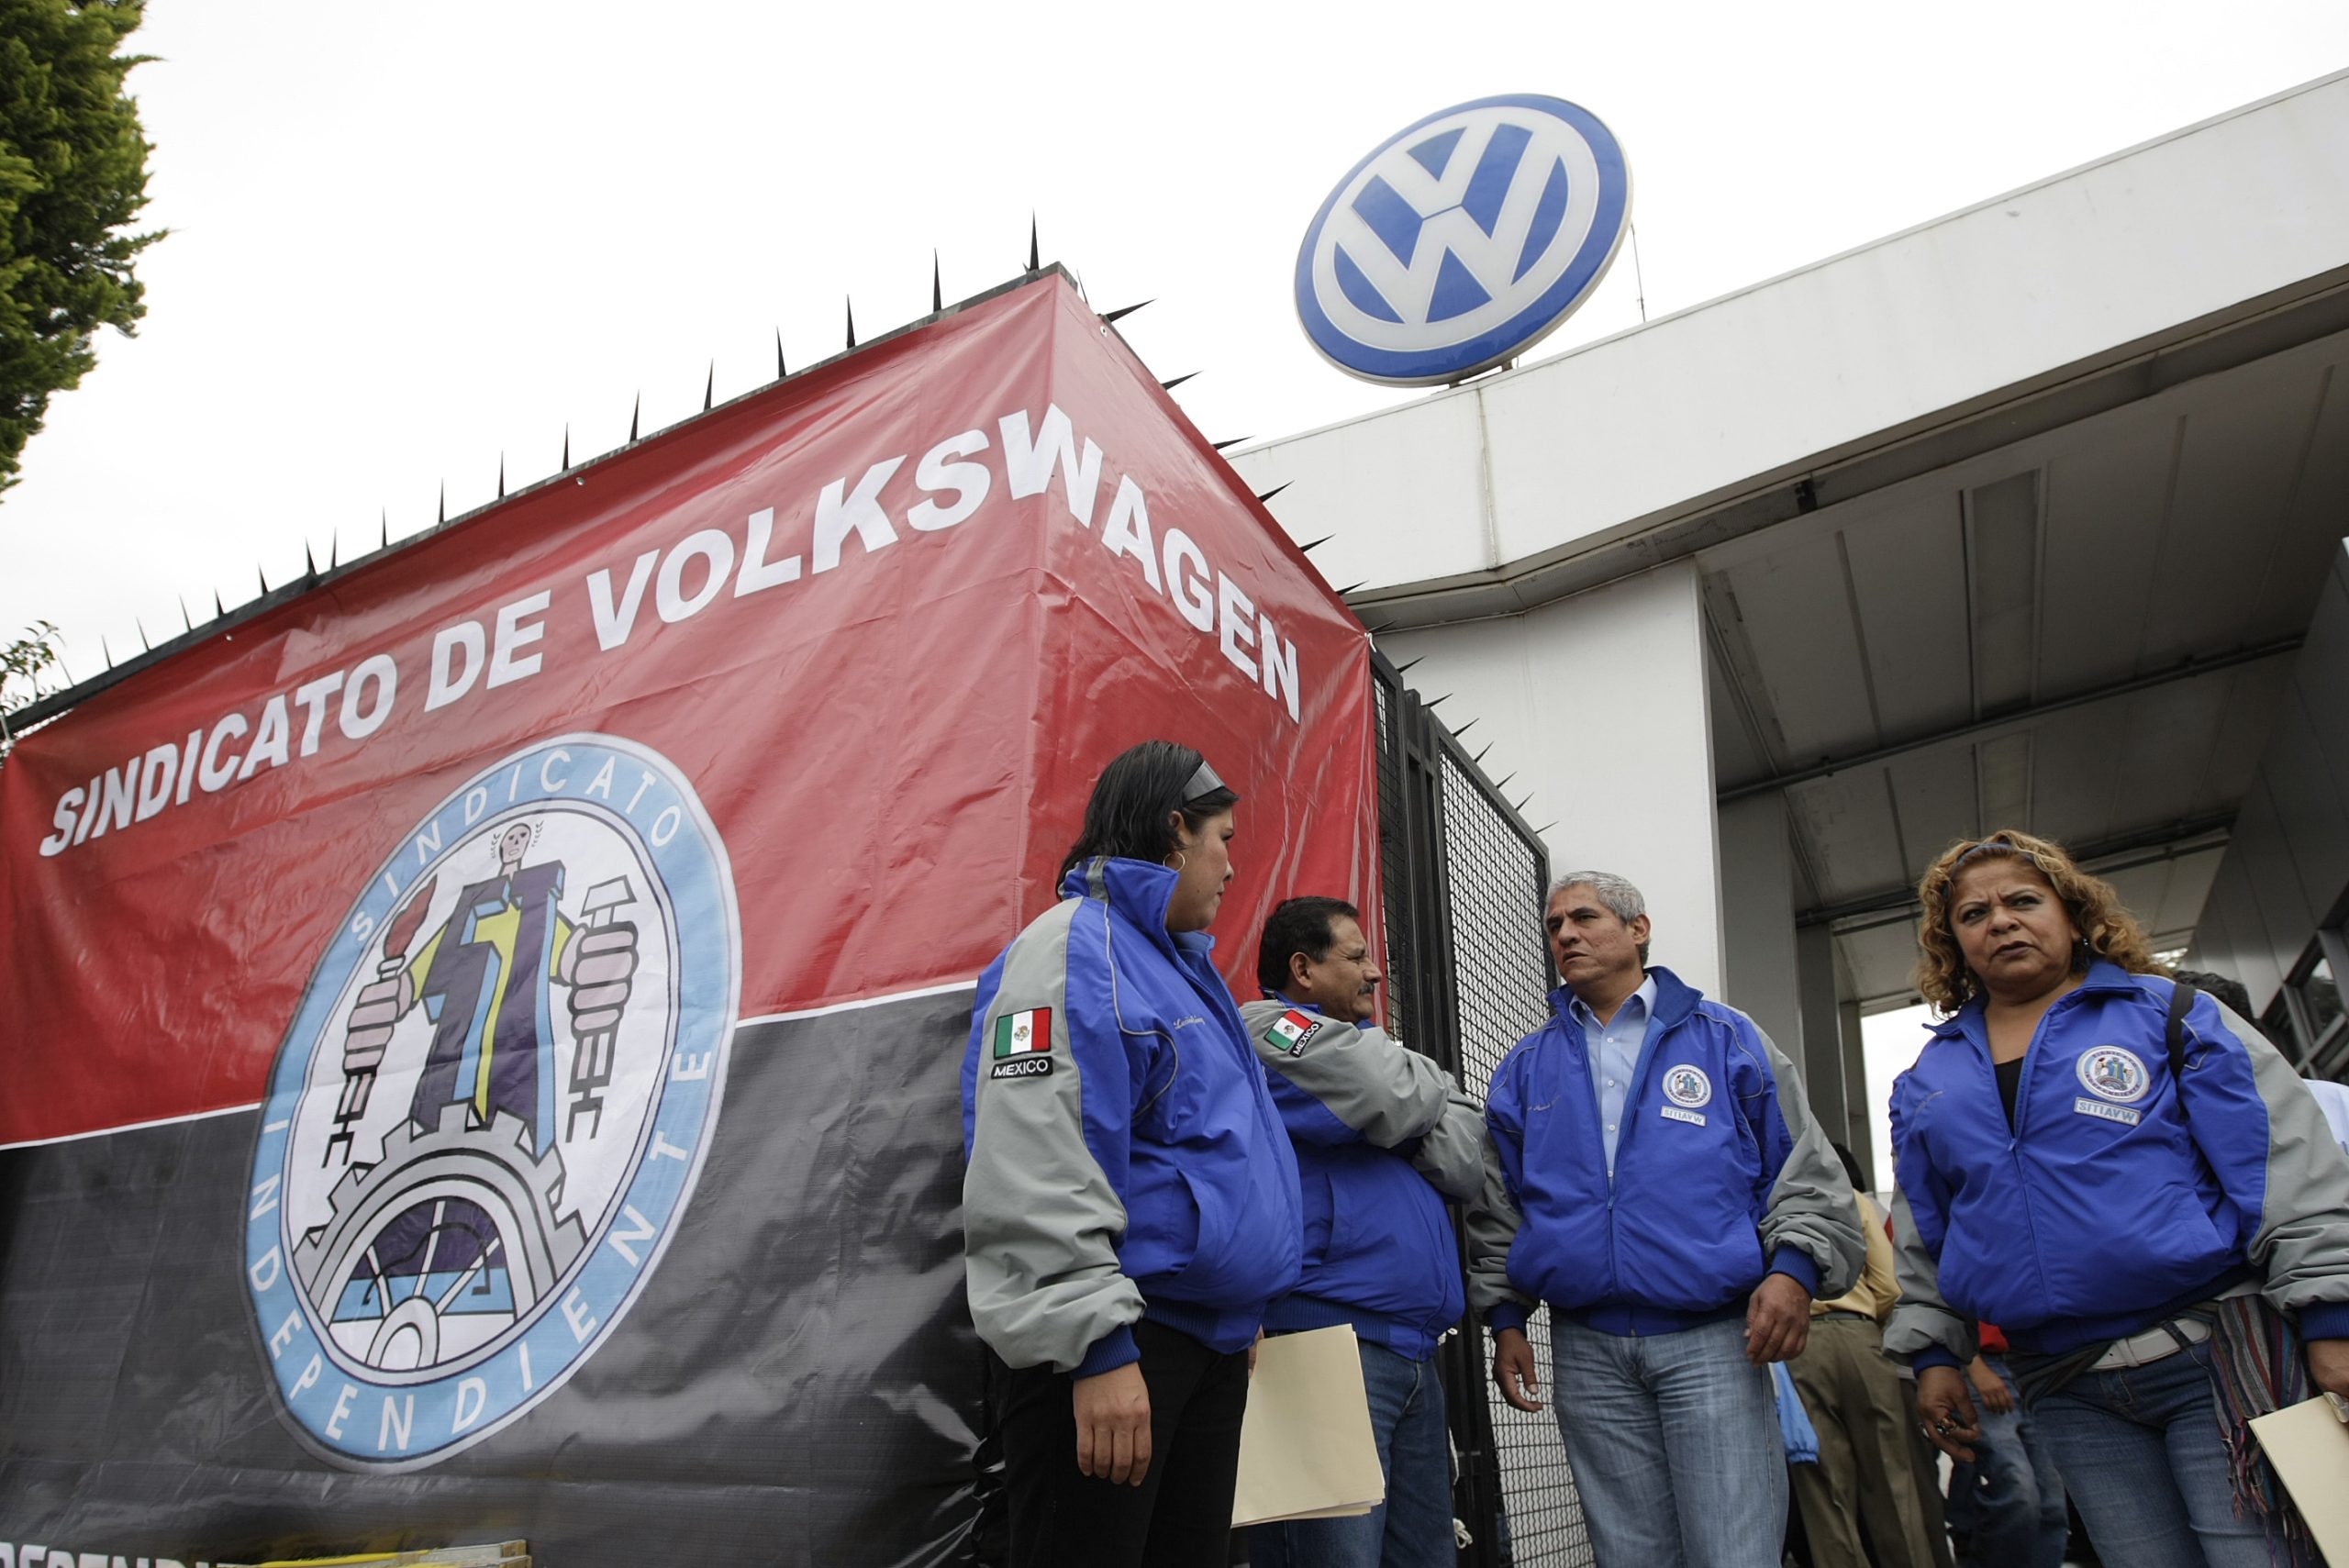 Votarán por tercera vez aumento salarial de 11% en VW